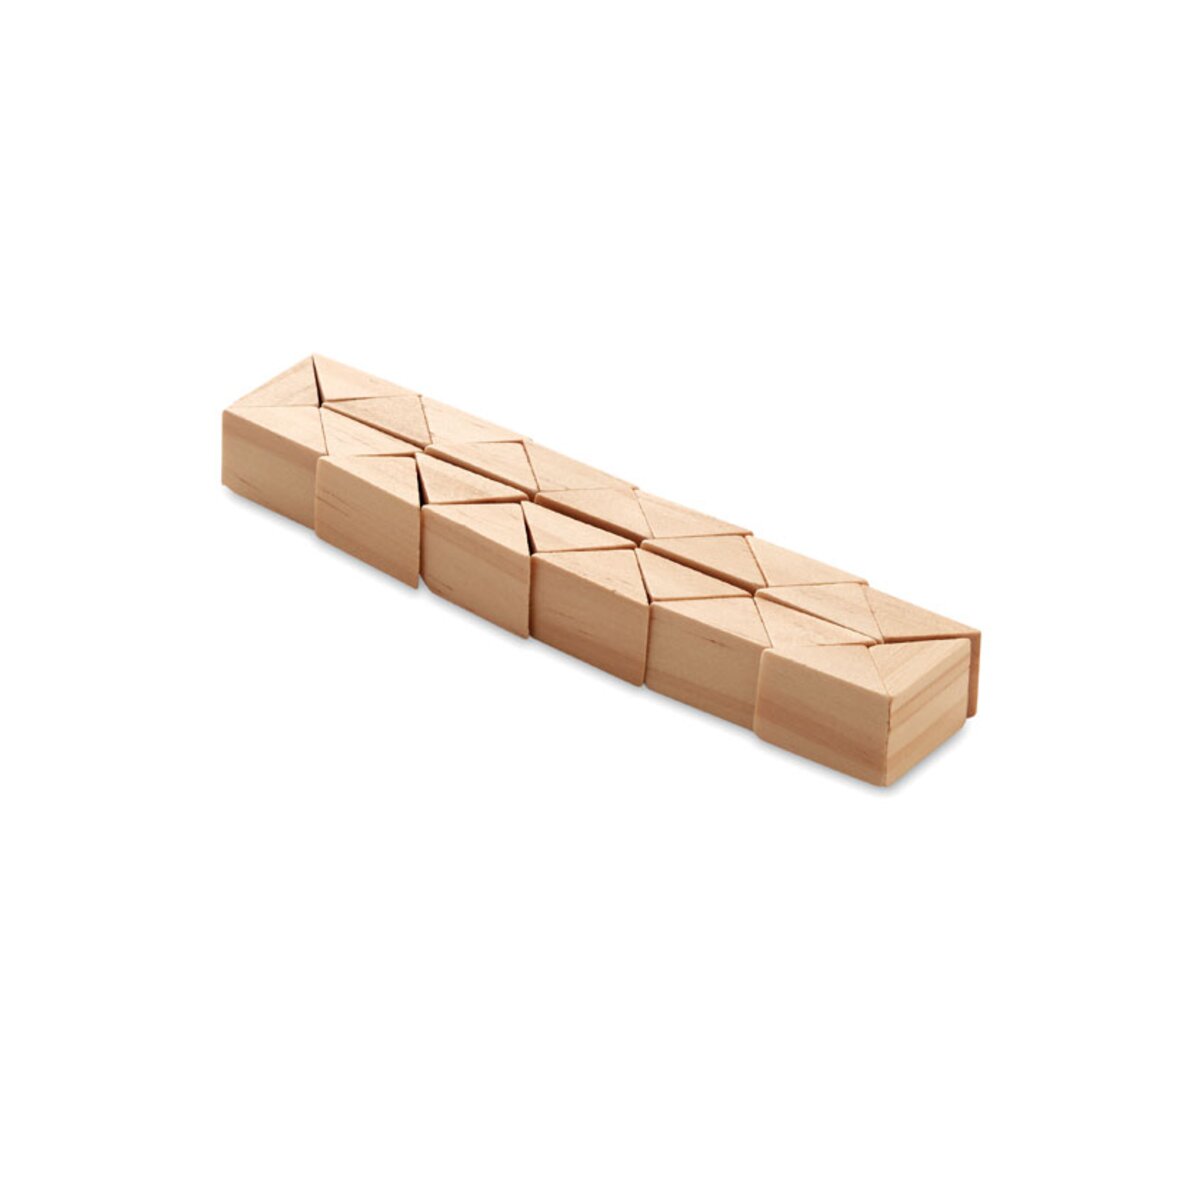 Drewniane puzzle/łamigłówki